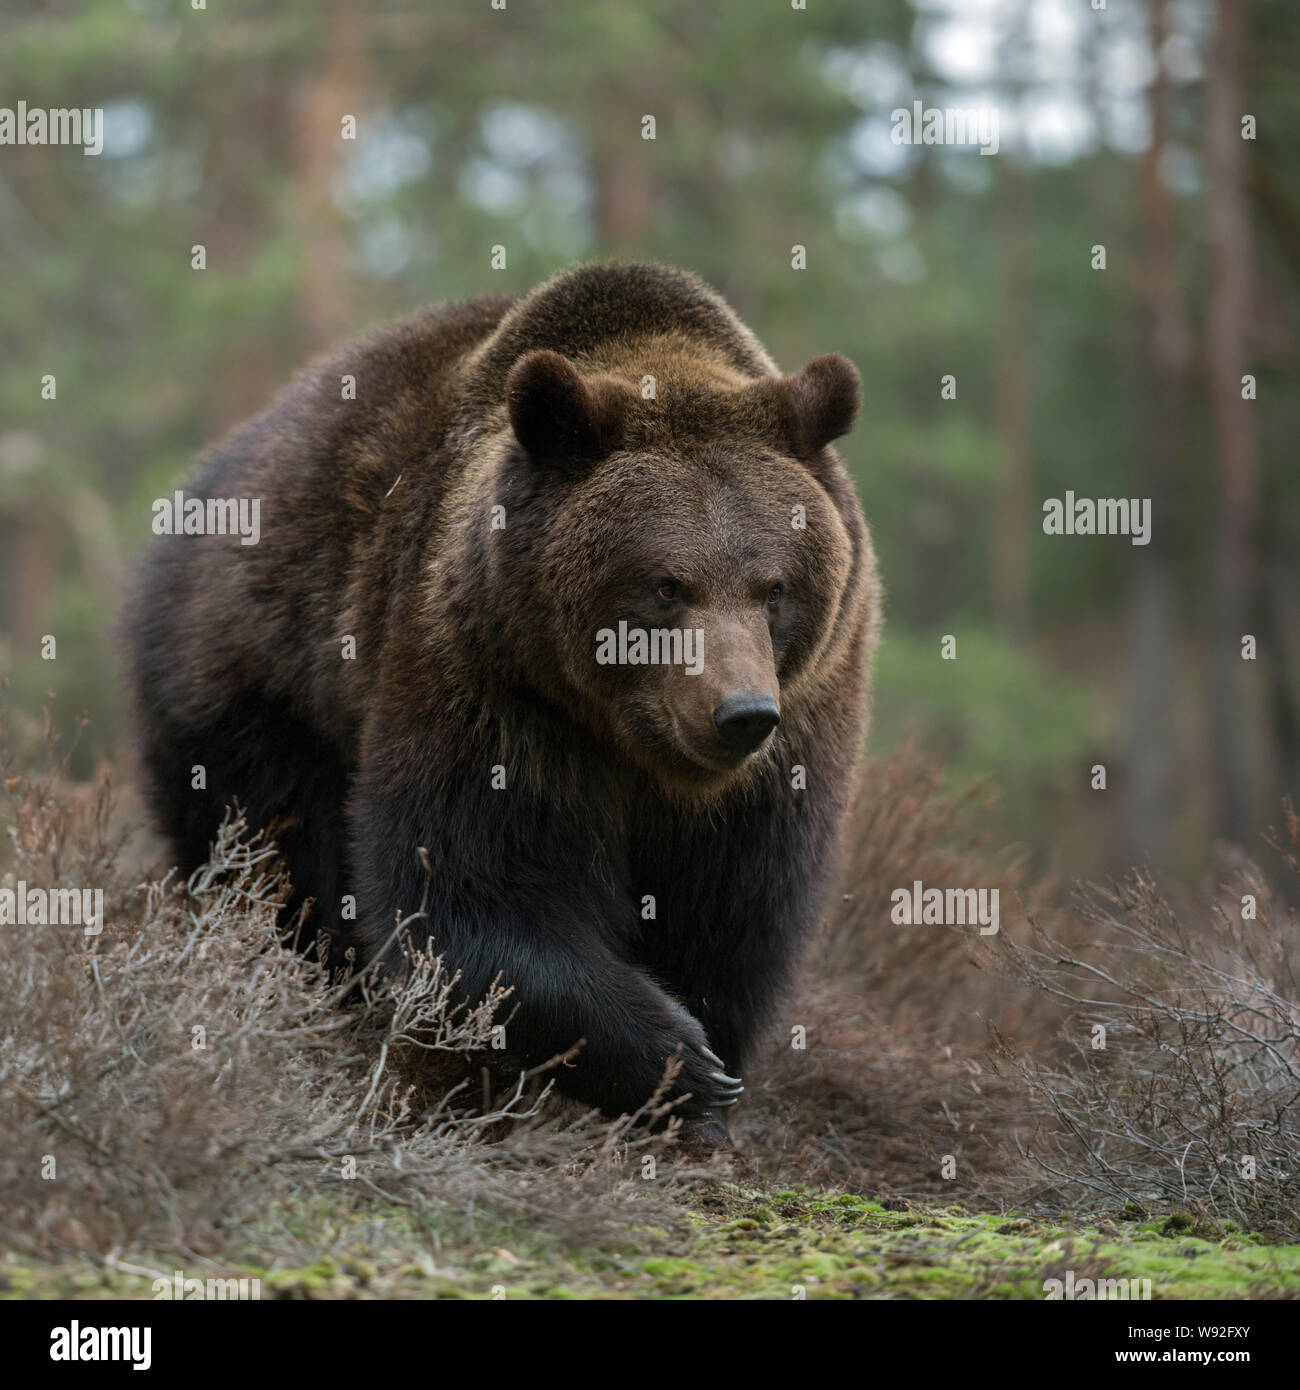 Orso bruno / Braunbär ( Ursus arctos ) a piedi attraverso gli arbusti in una foresta, guarda arrabbiato, pericoloso incontrare, enormi zampe, frontale side shot, l'Europa. Foto Stock